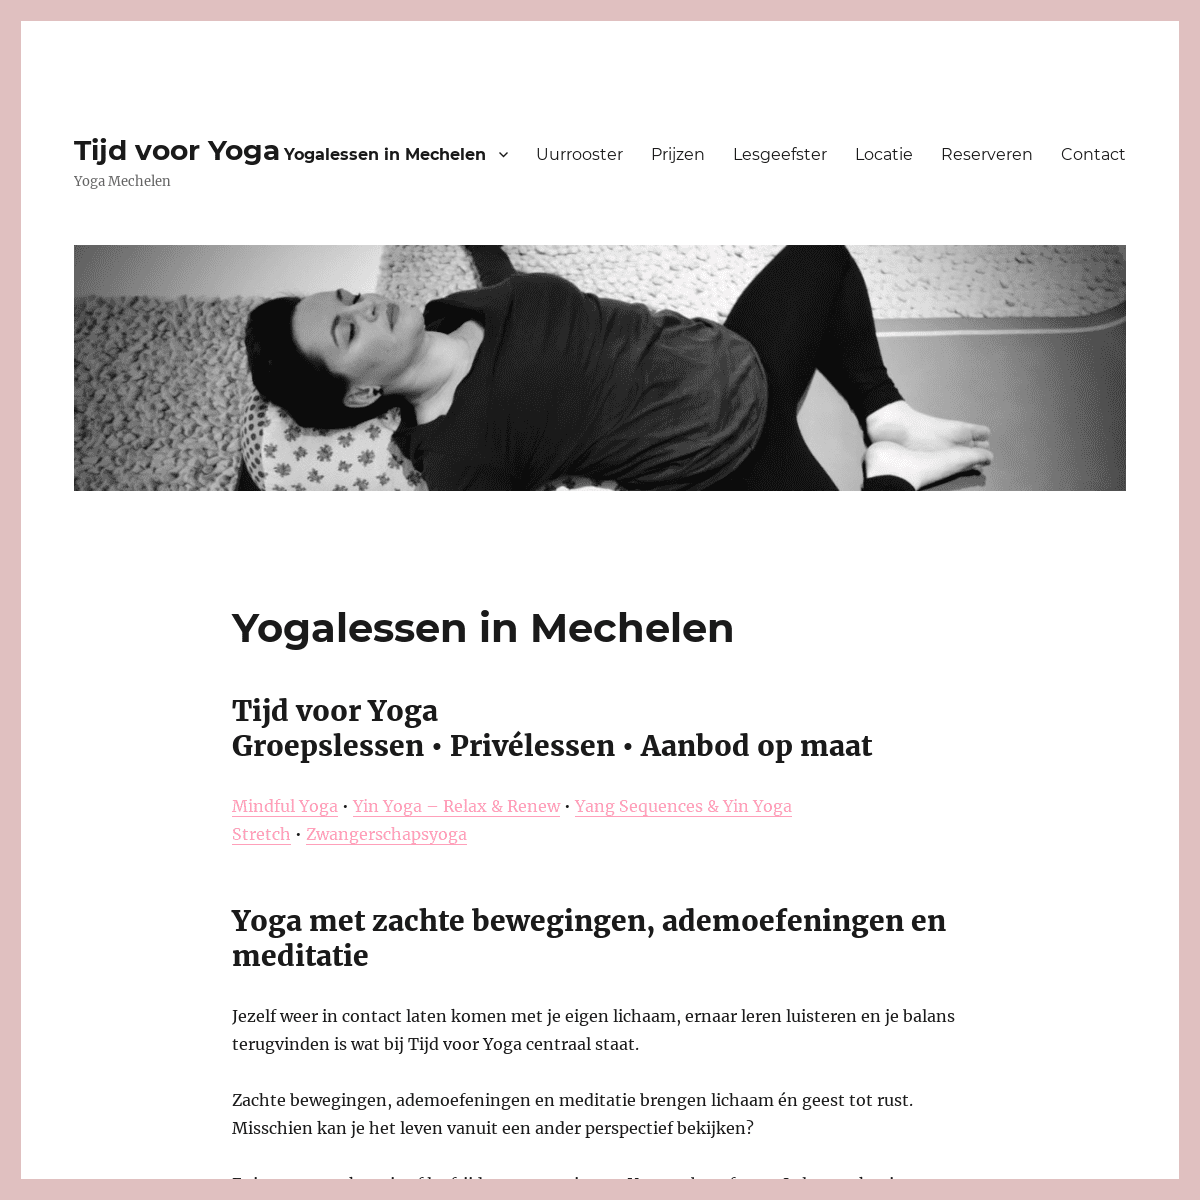 Yoga Mechelen - Tijd voor Yoga - Yogalessen in Mechelen